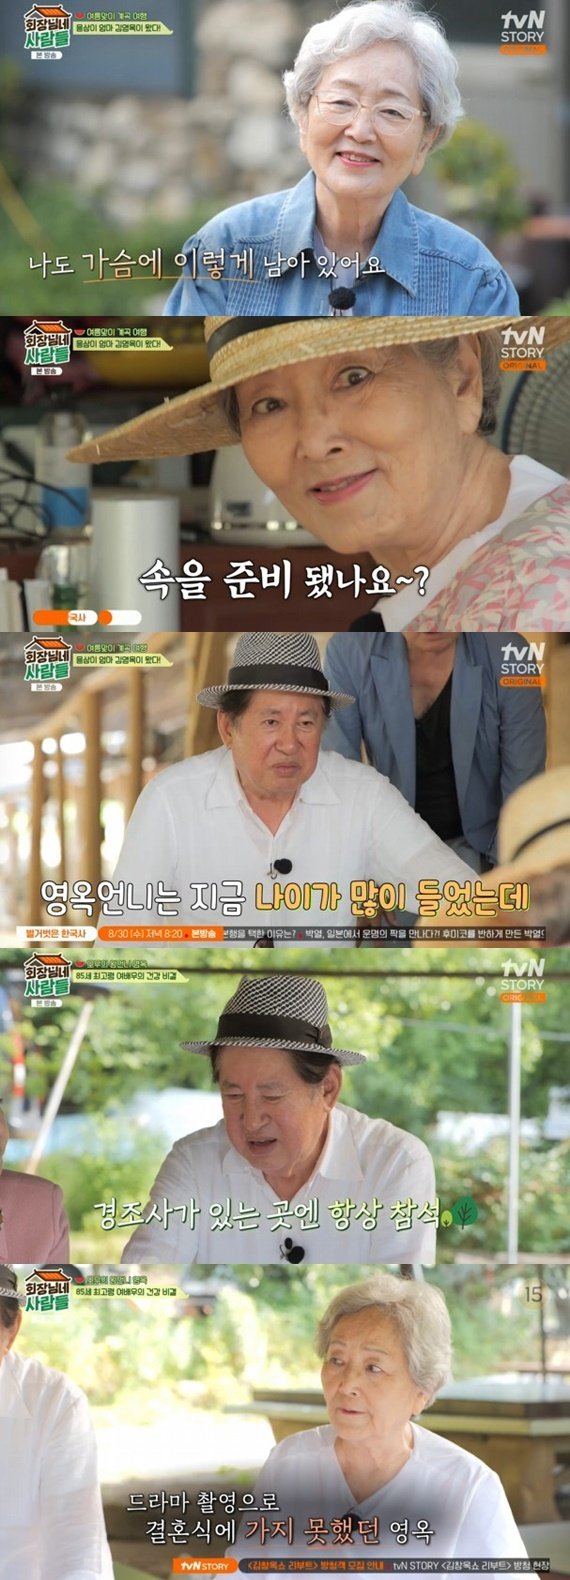 김영옥 김용건 子 결혼식, '킹더랜드' 촬영으로 불참